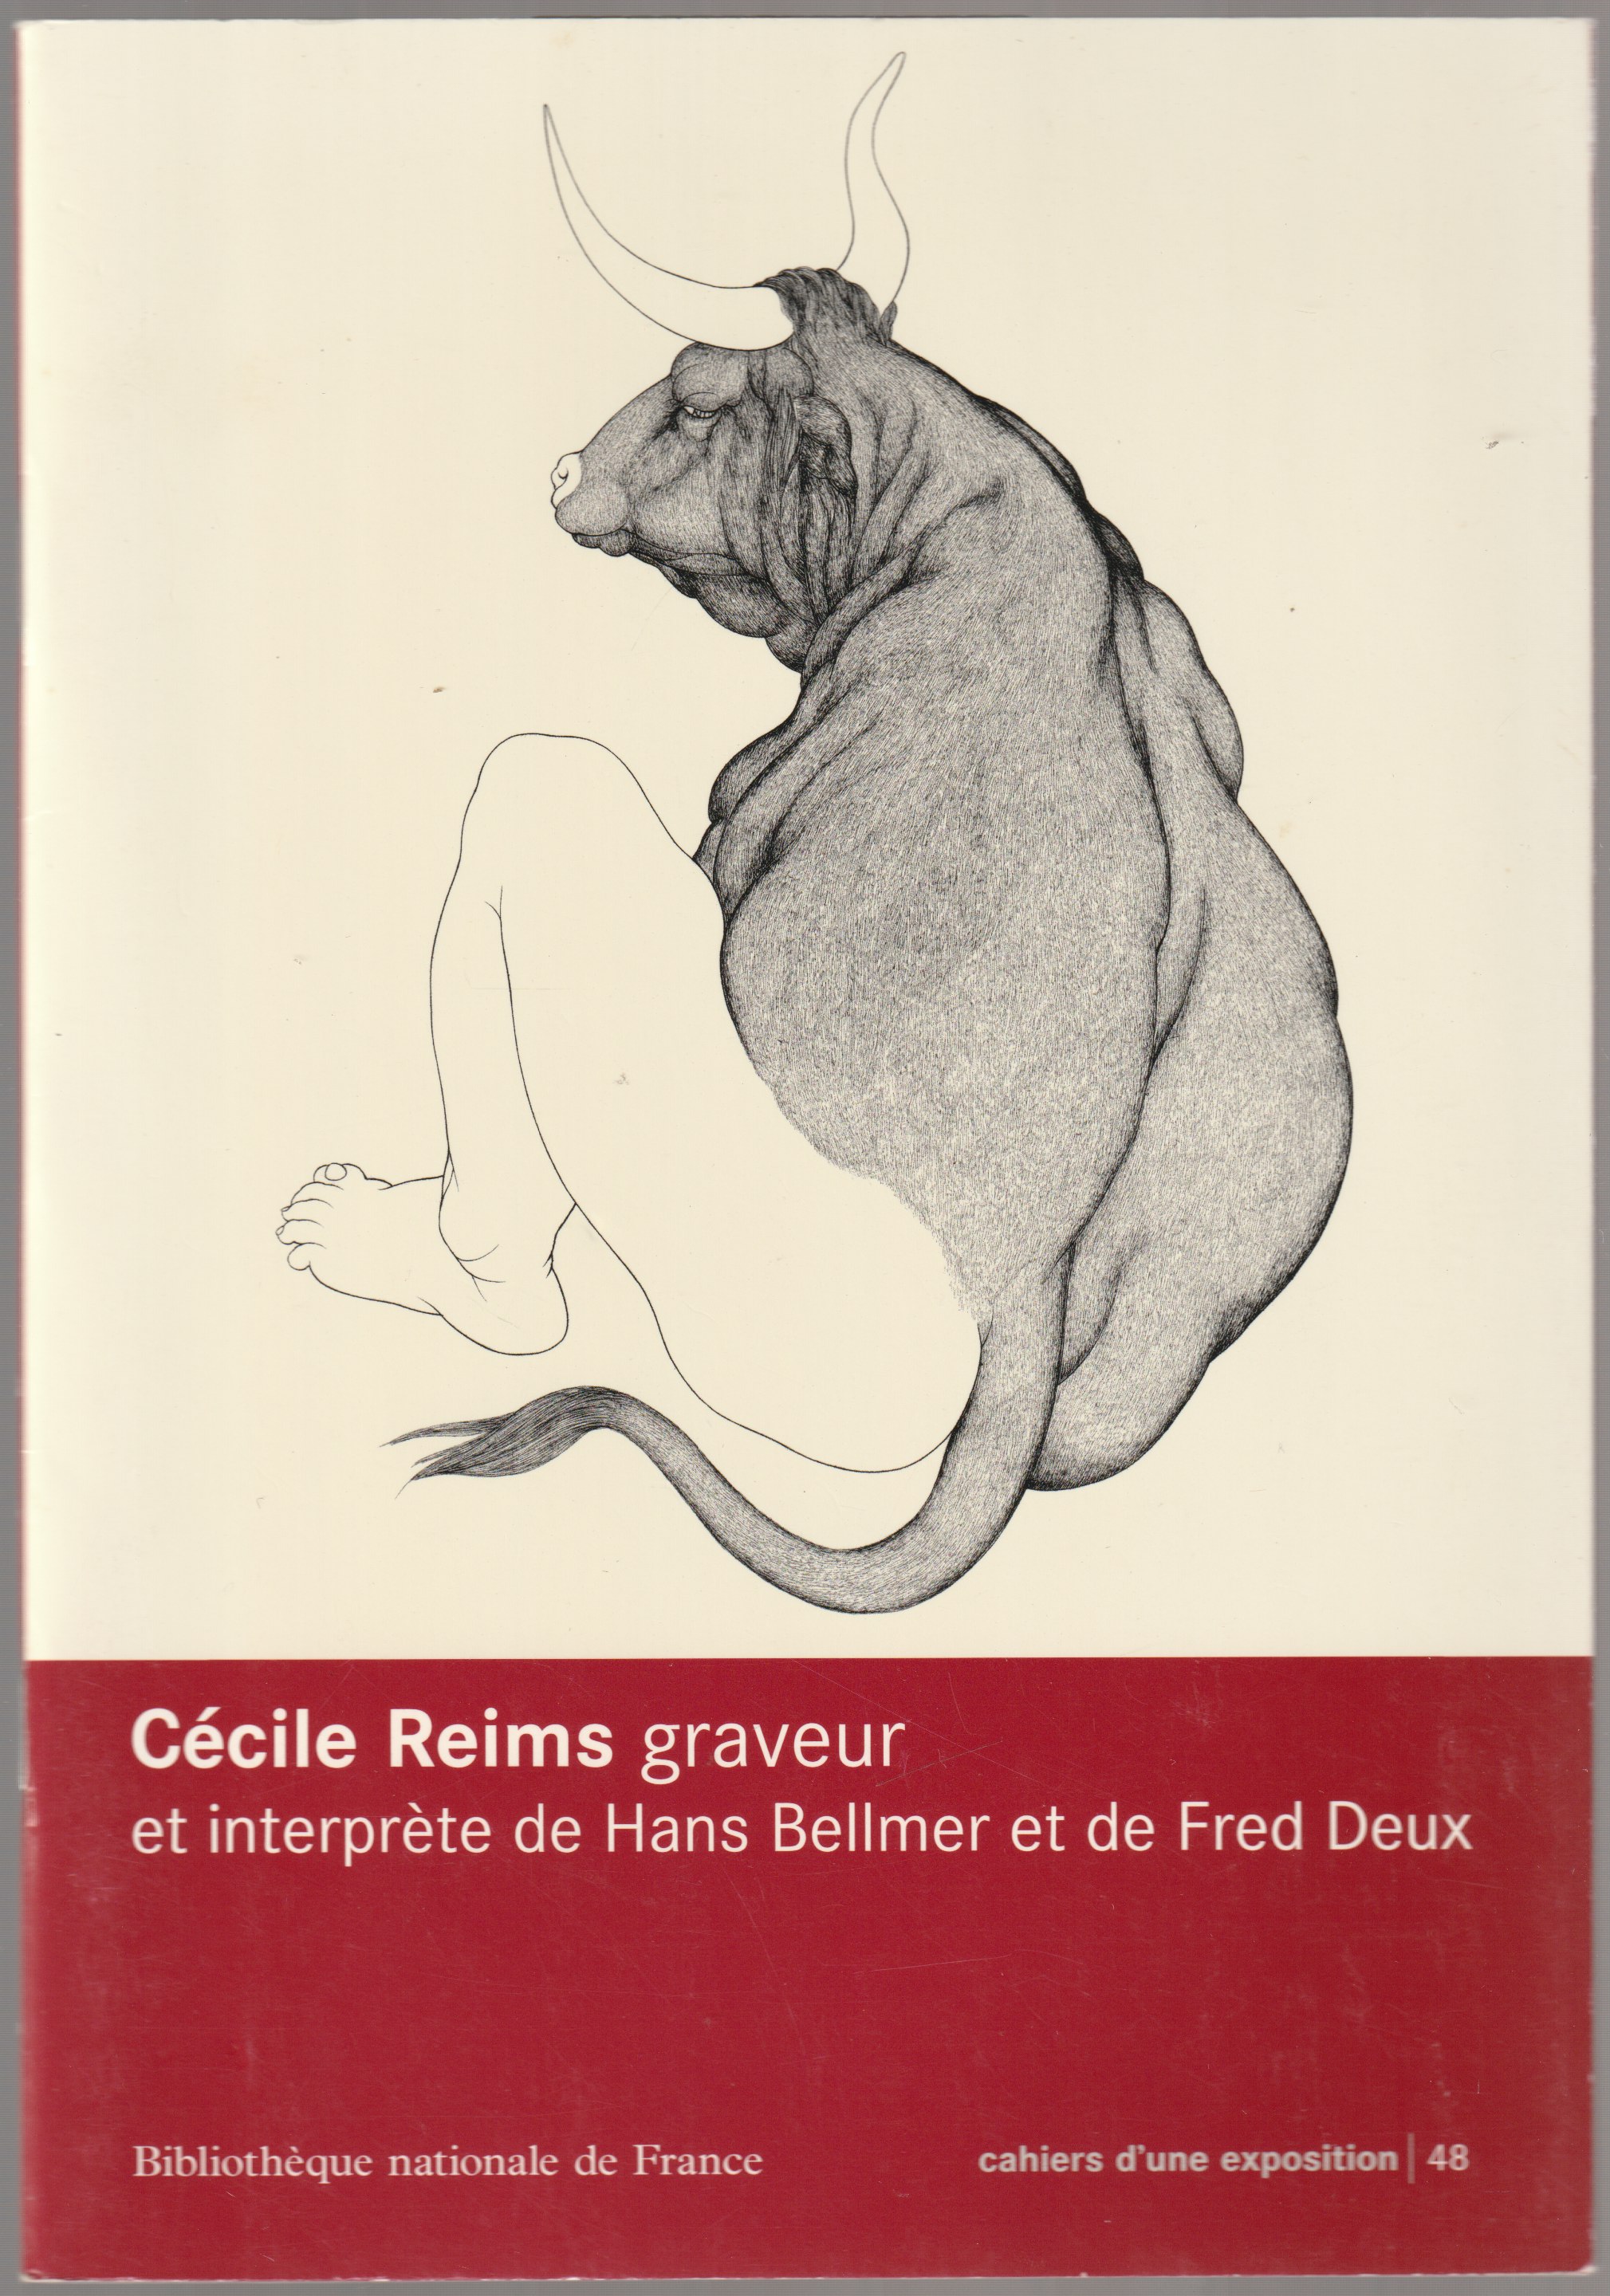 Cecile Reims graveur et interprete de Hans Bellmer et de Fred Deux.